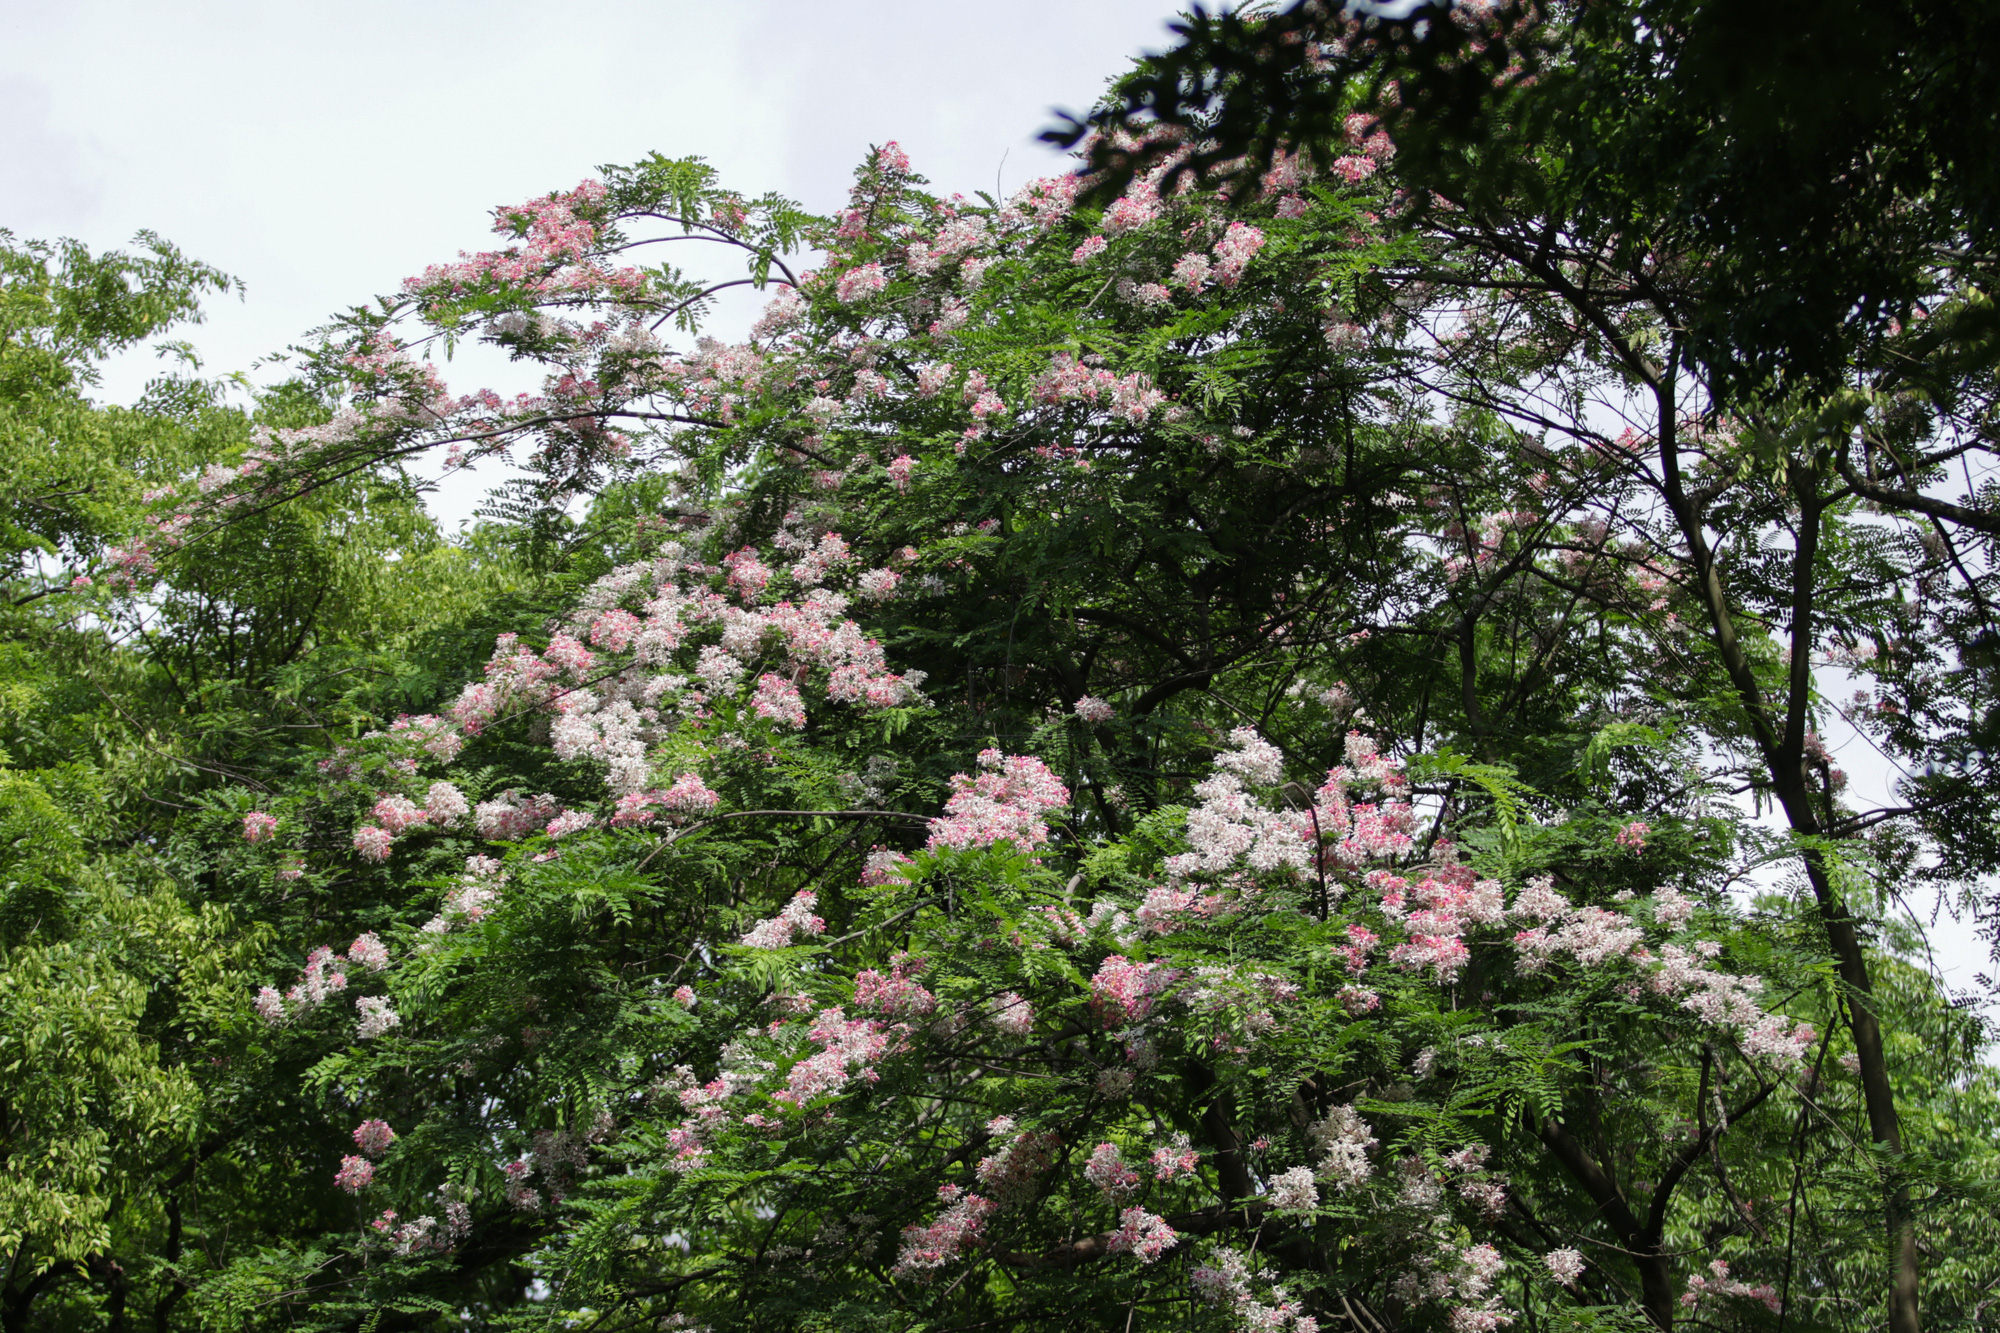 Mãn nhãn muồng hoa đào bung nở đẹp mê hồn ở Hà Nội - Ảnh 2.